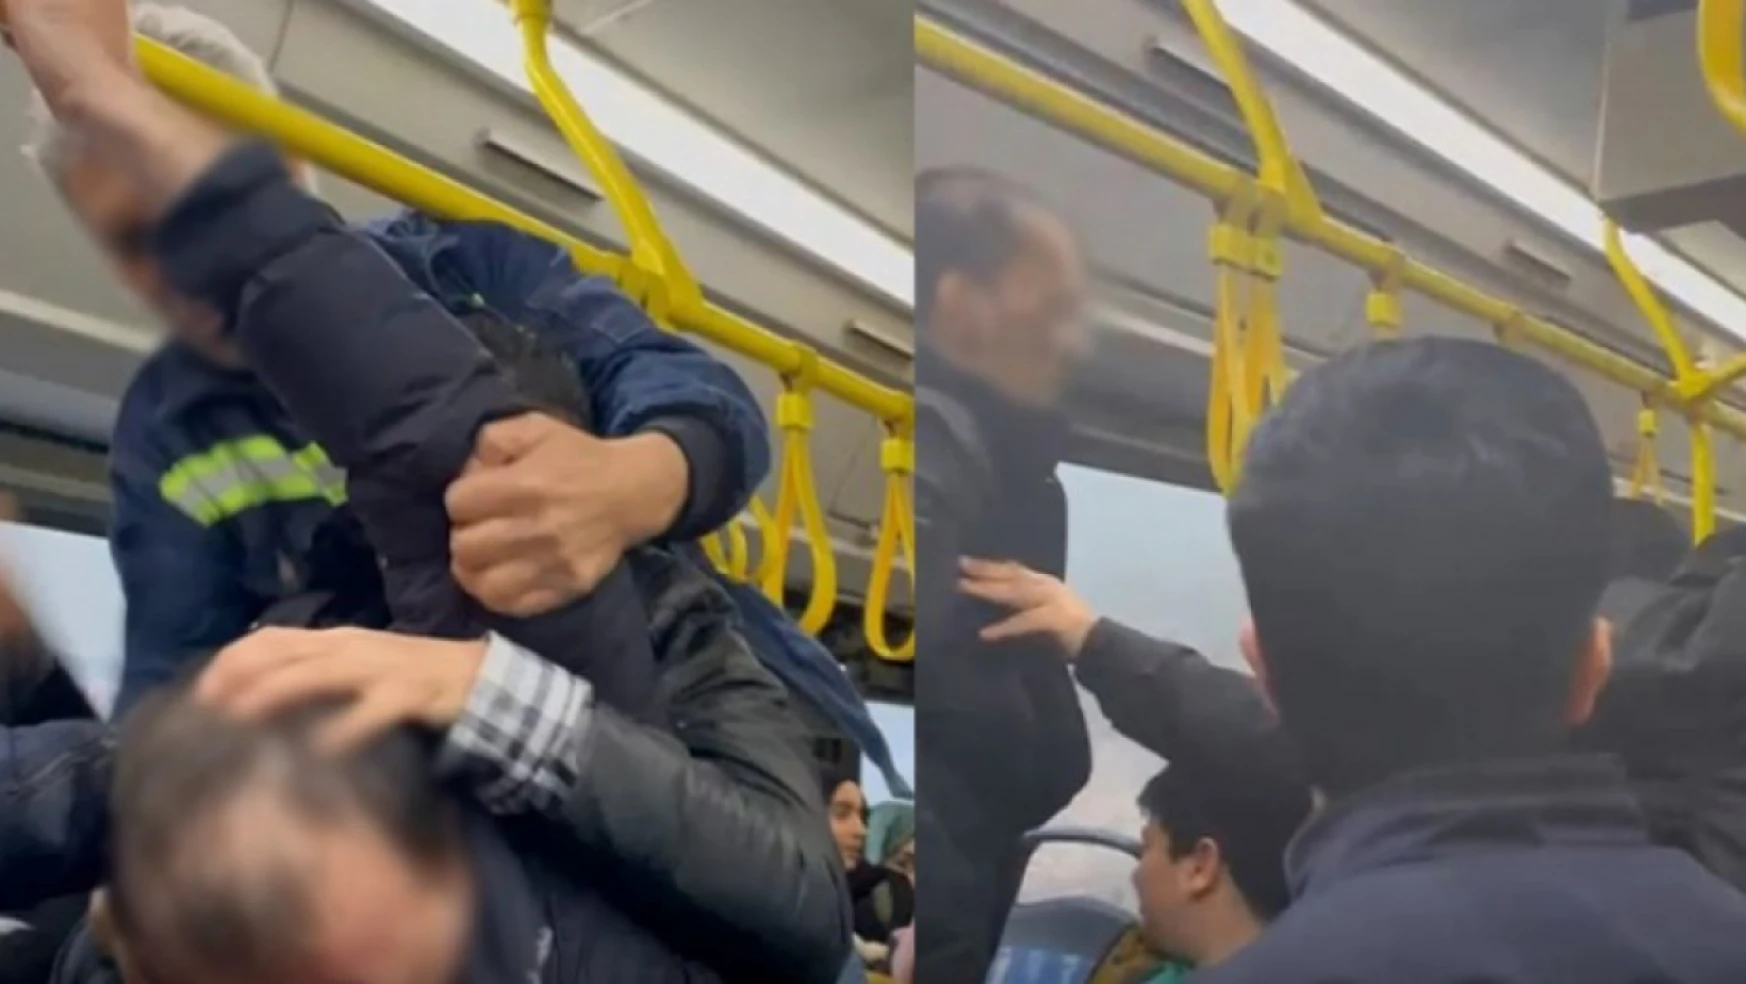 Bir yolcunun başka bir yolcunun cep telefonu ekranına bakması nedeniyle kavga